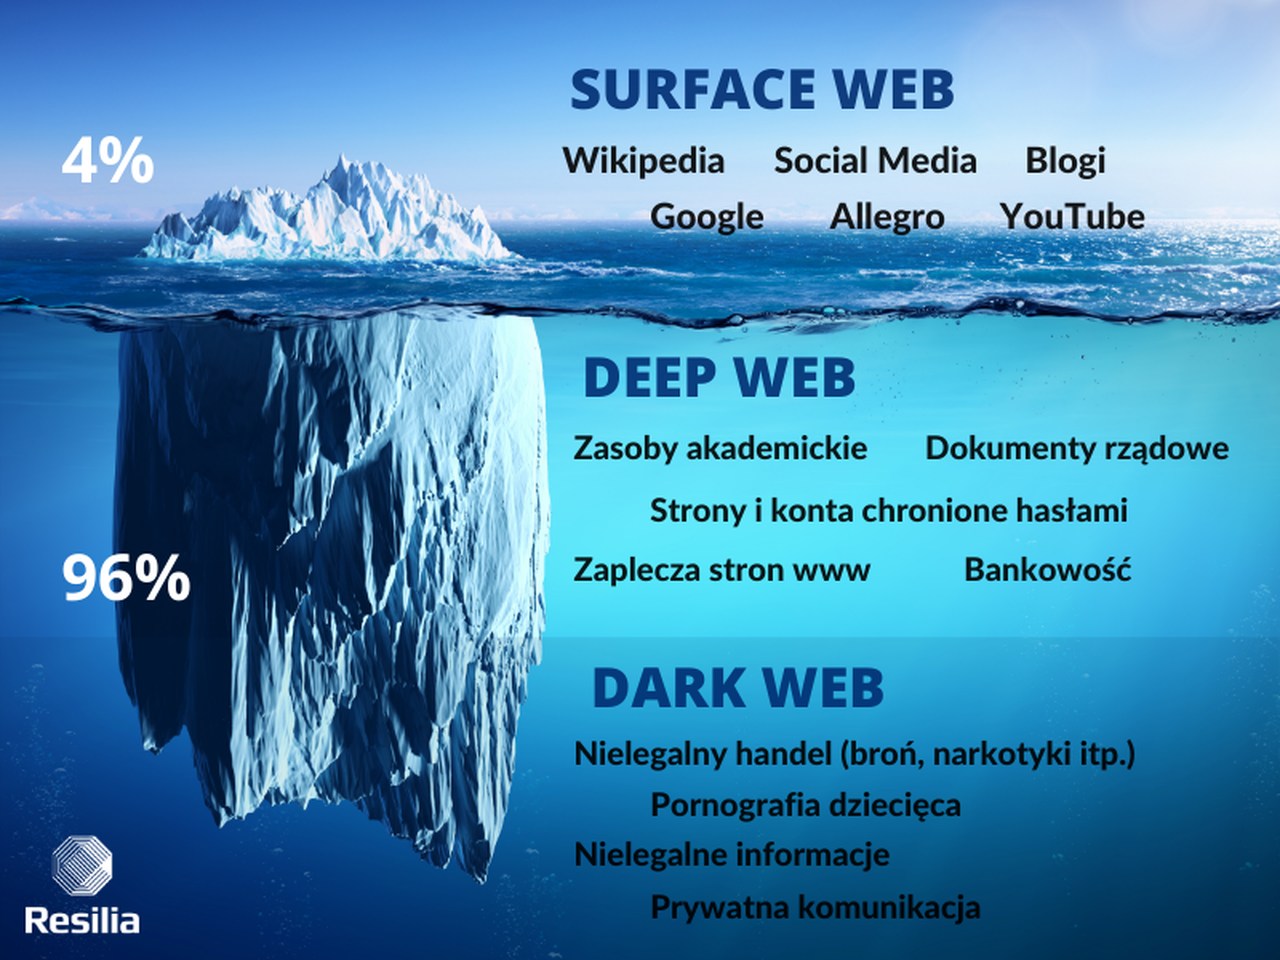 deep web dark web darknet